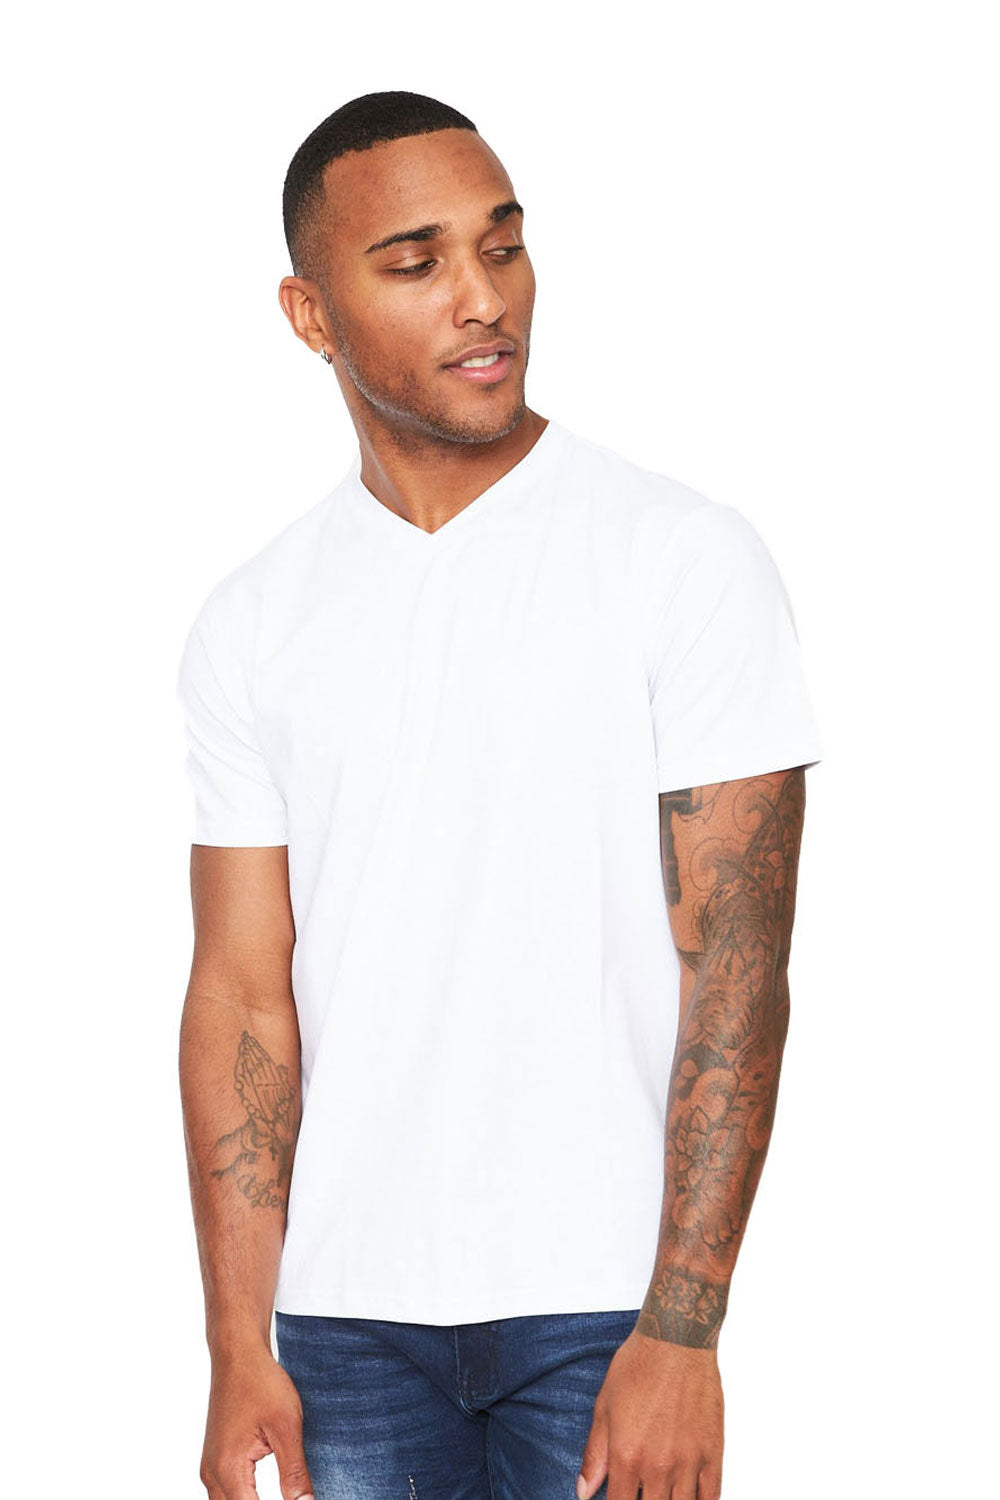 BARABAS Men's Solid Color V-neck T-shirts VTV216 White